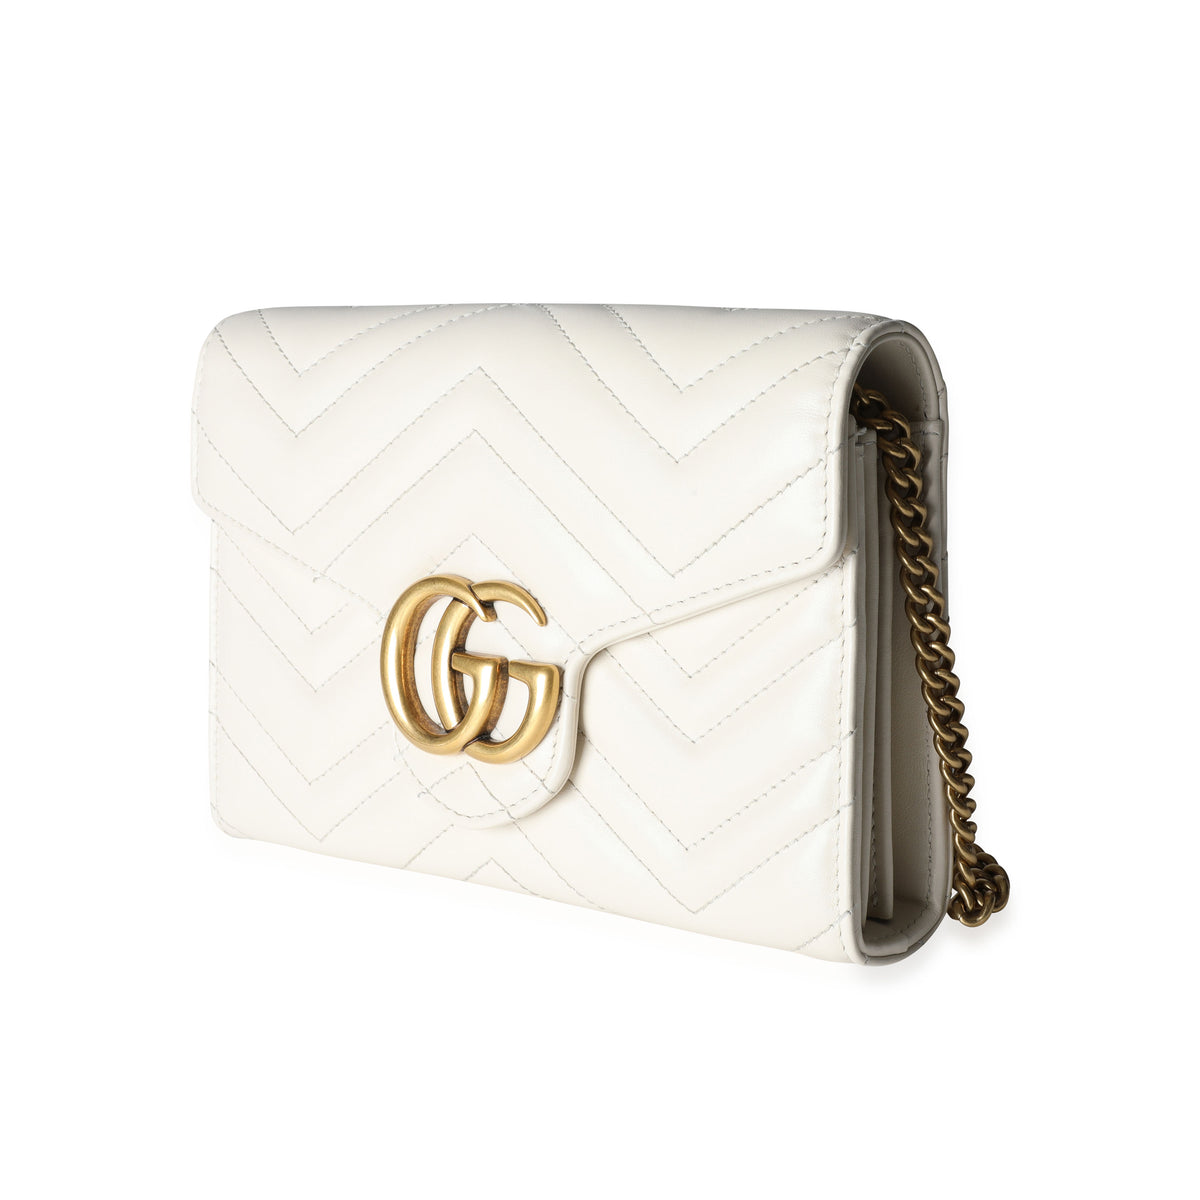 Gucci White Mini GG Marmont Chain Bag for Women